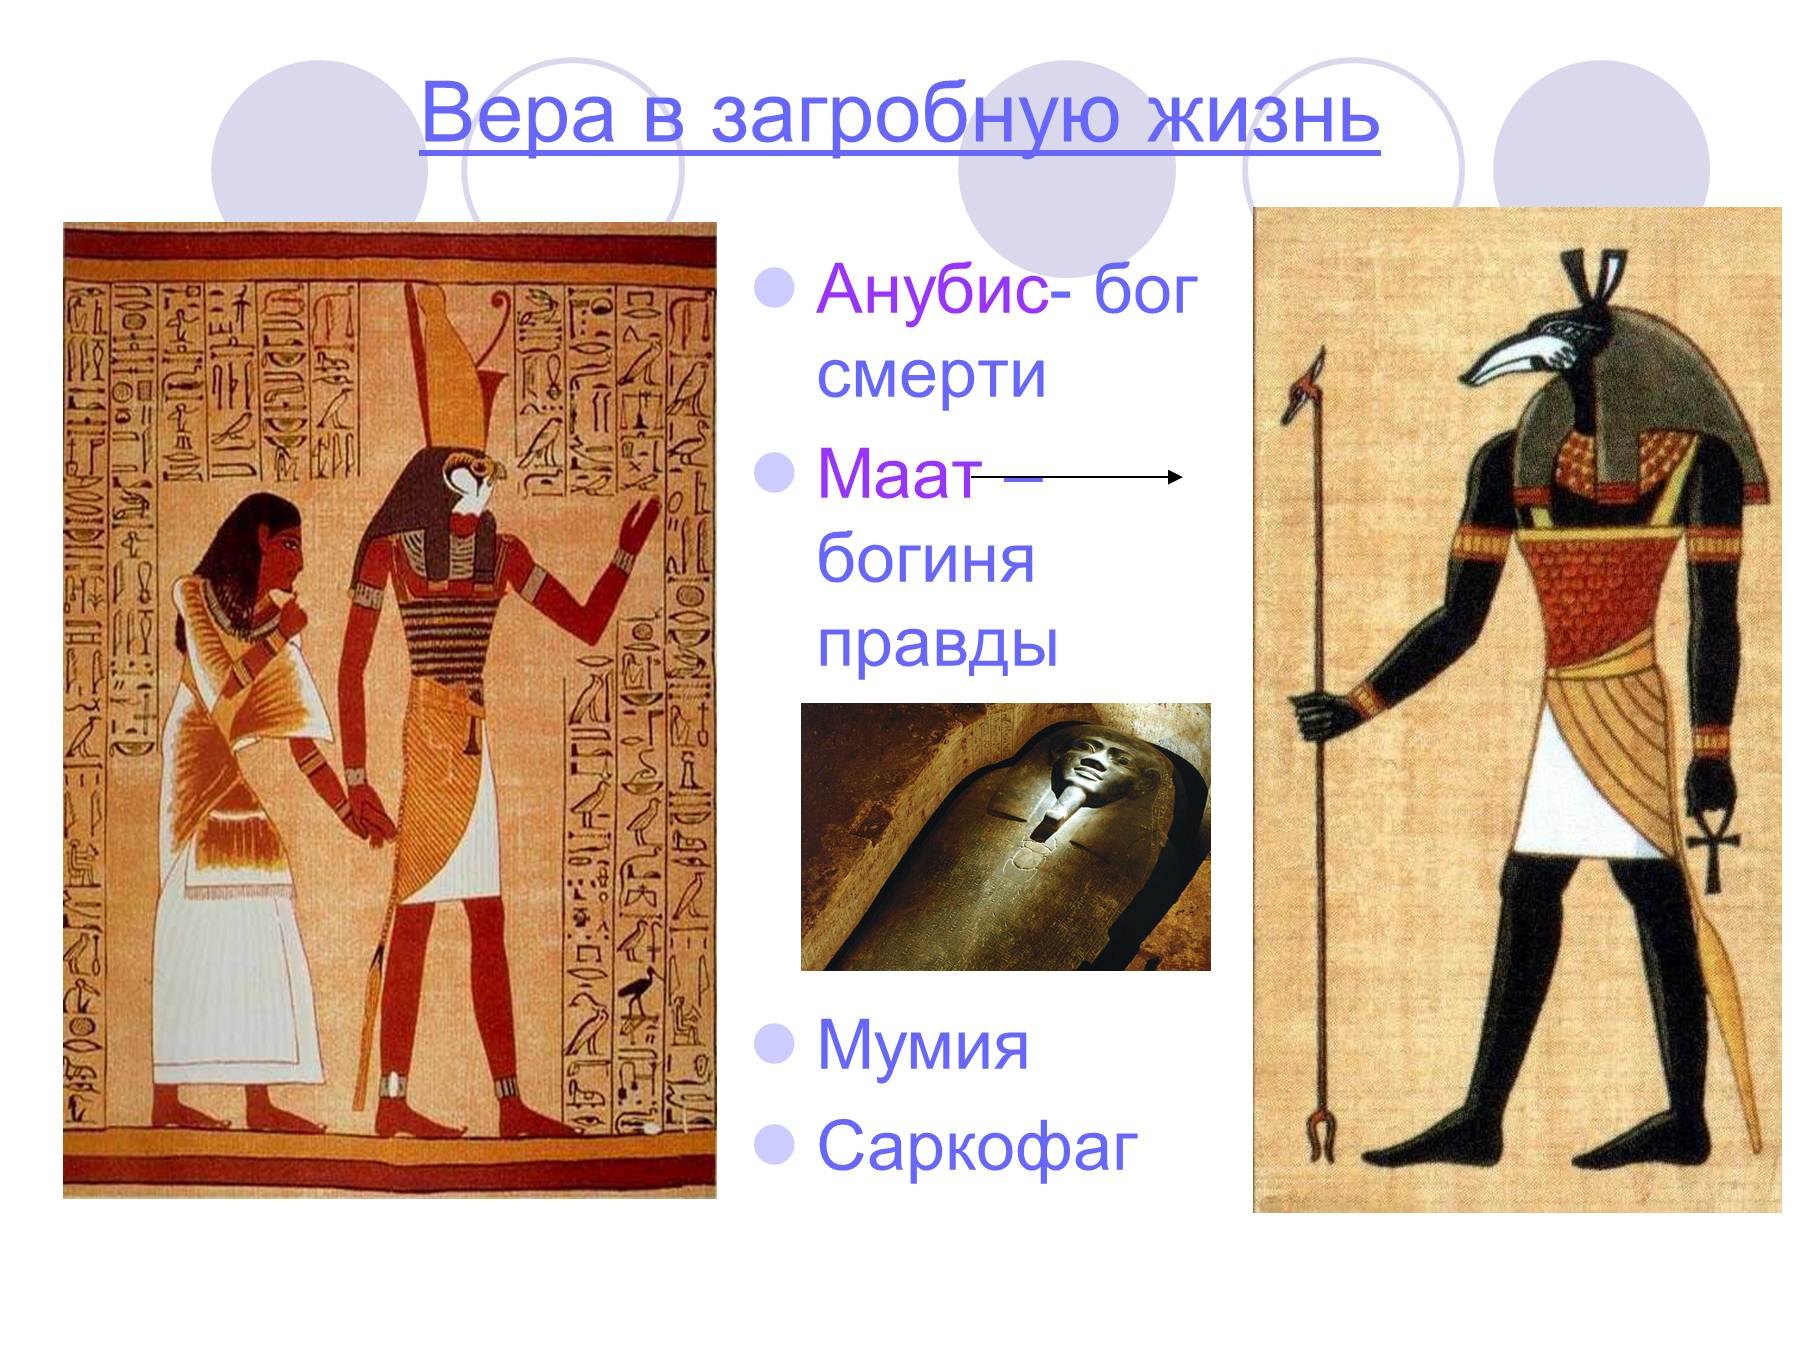 Какая иллюстрация относится к древнему египту